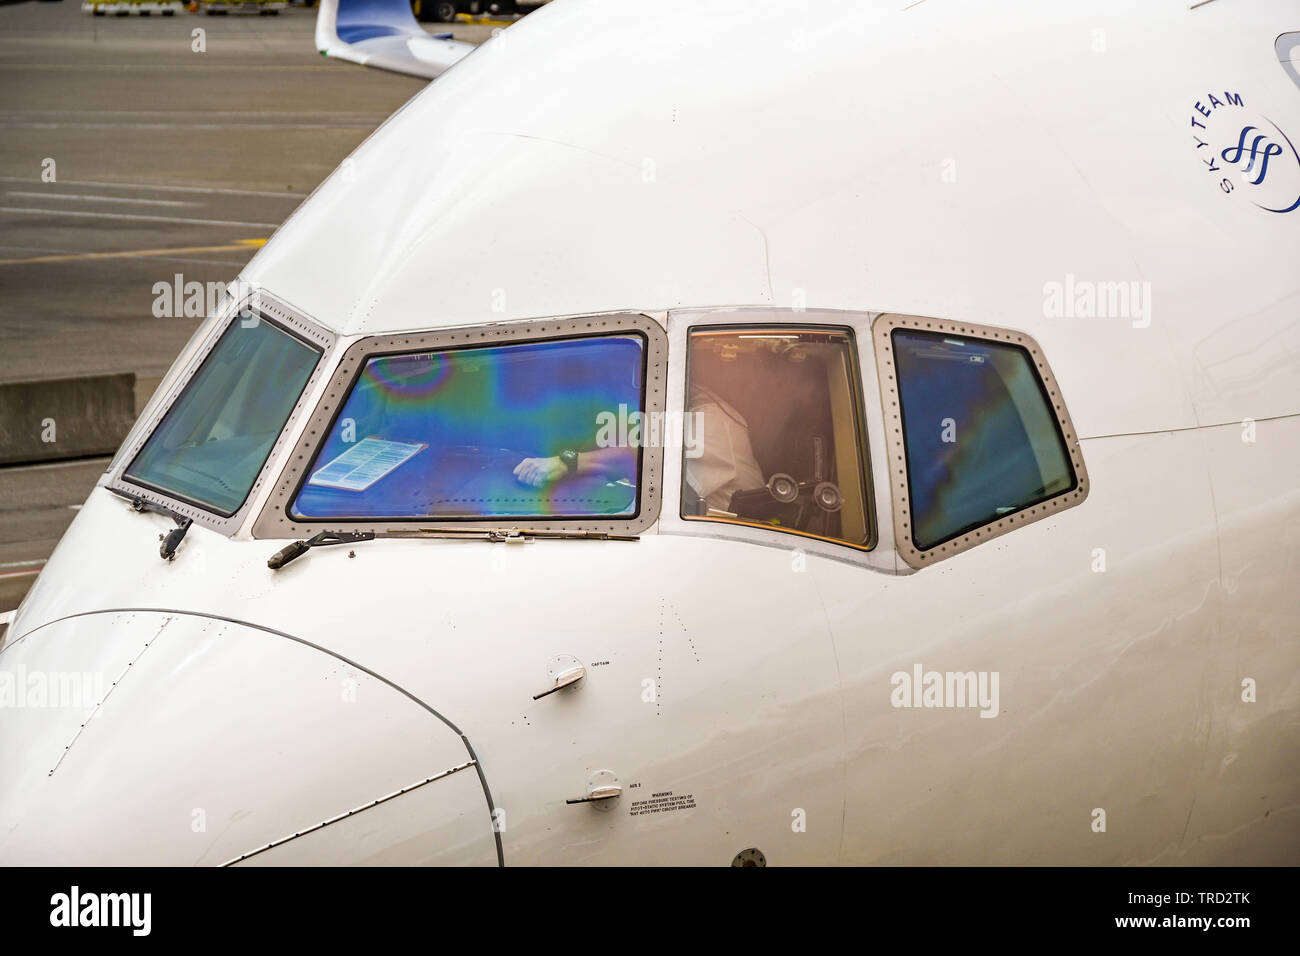 Flughafen Seattle Tacoma, WA, USA - JUNI 2018: Nahaufnahme der Cockpit Fenster eines Delta Airlines Boeing 757 Jet in Seattle Tacoma Airport. Stockfoto